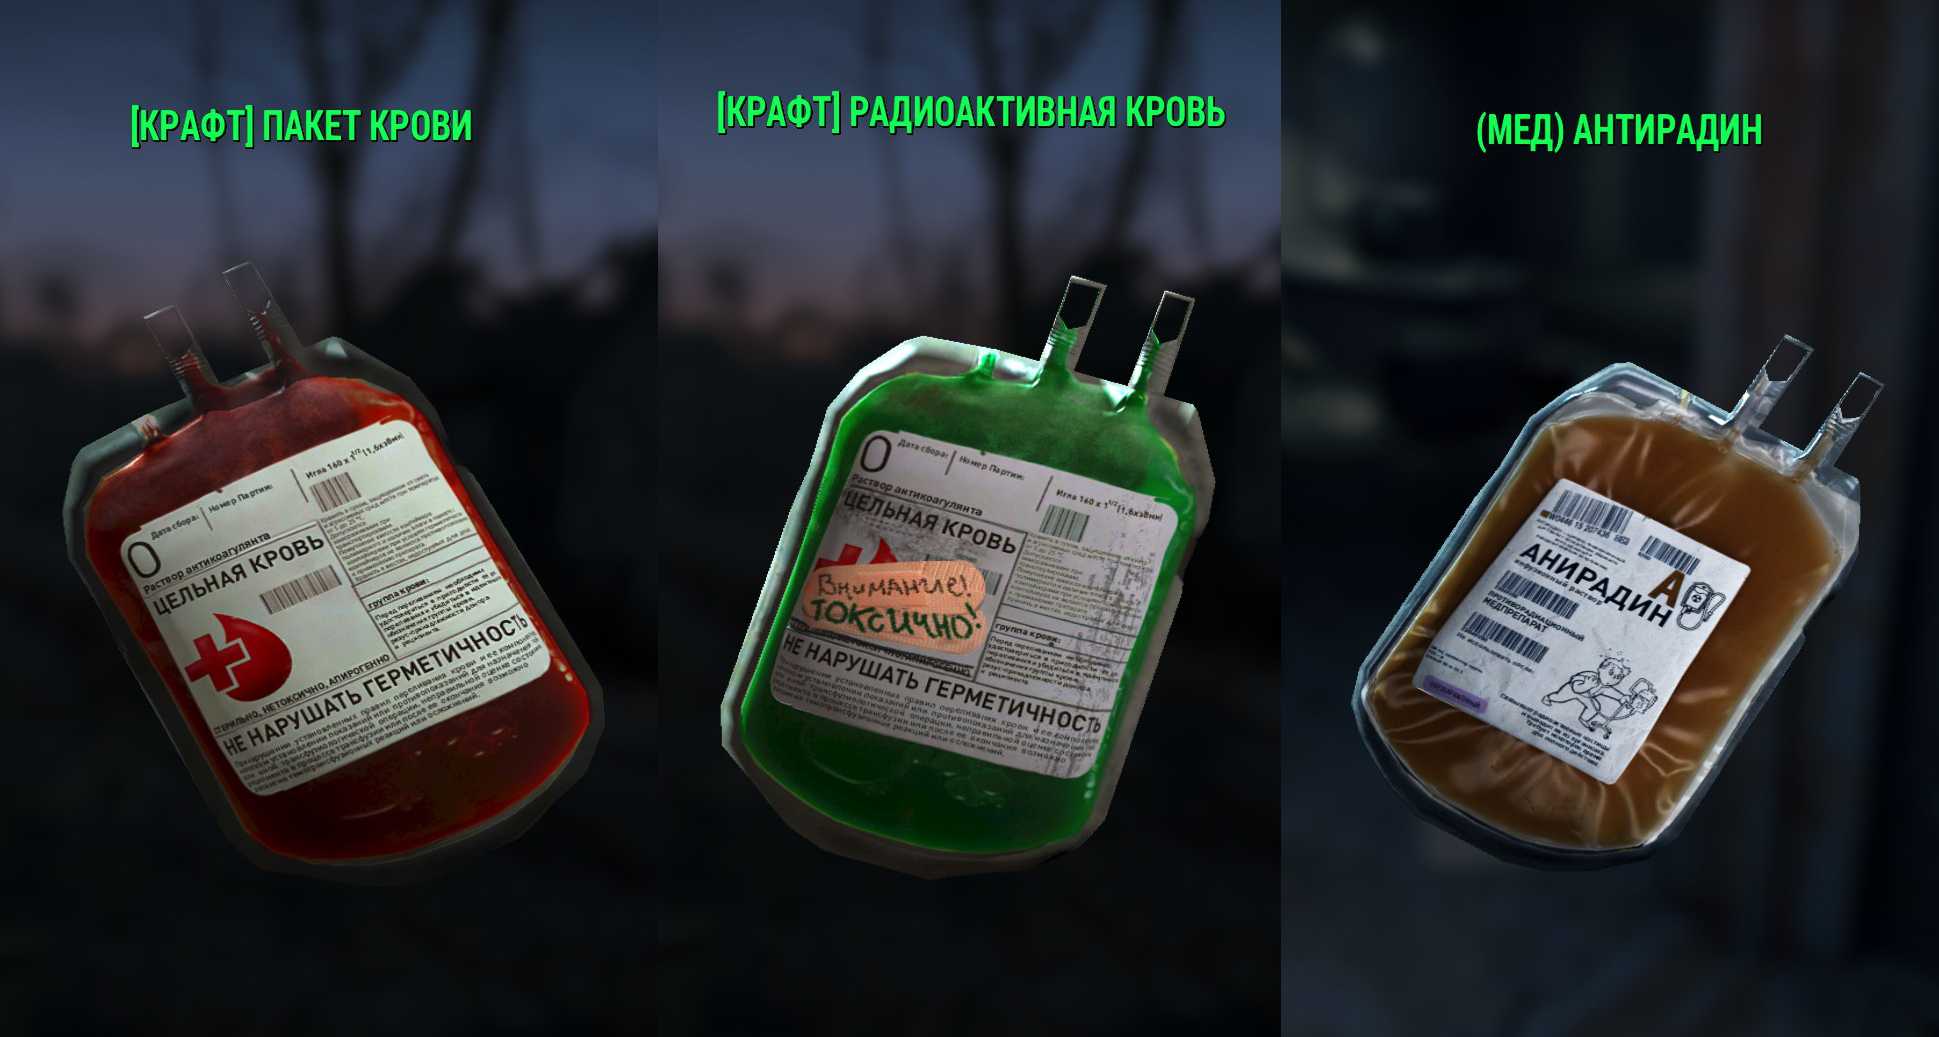 Fallout 4 пакеты крови (119) фото